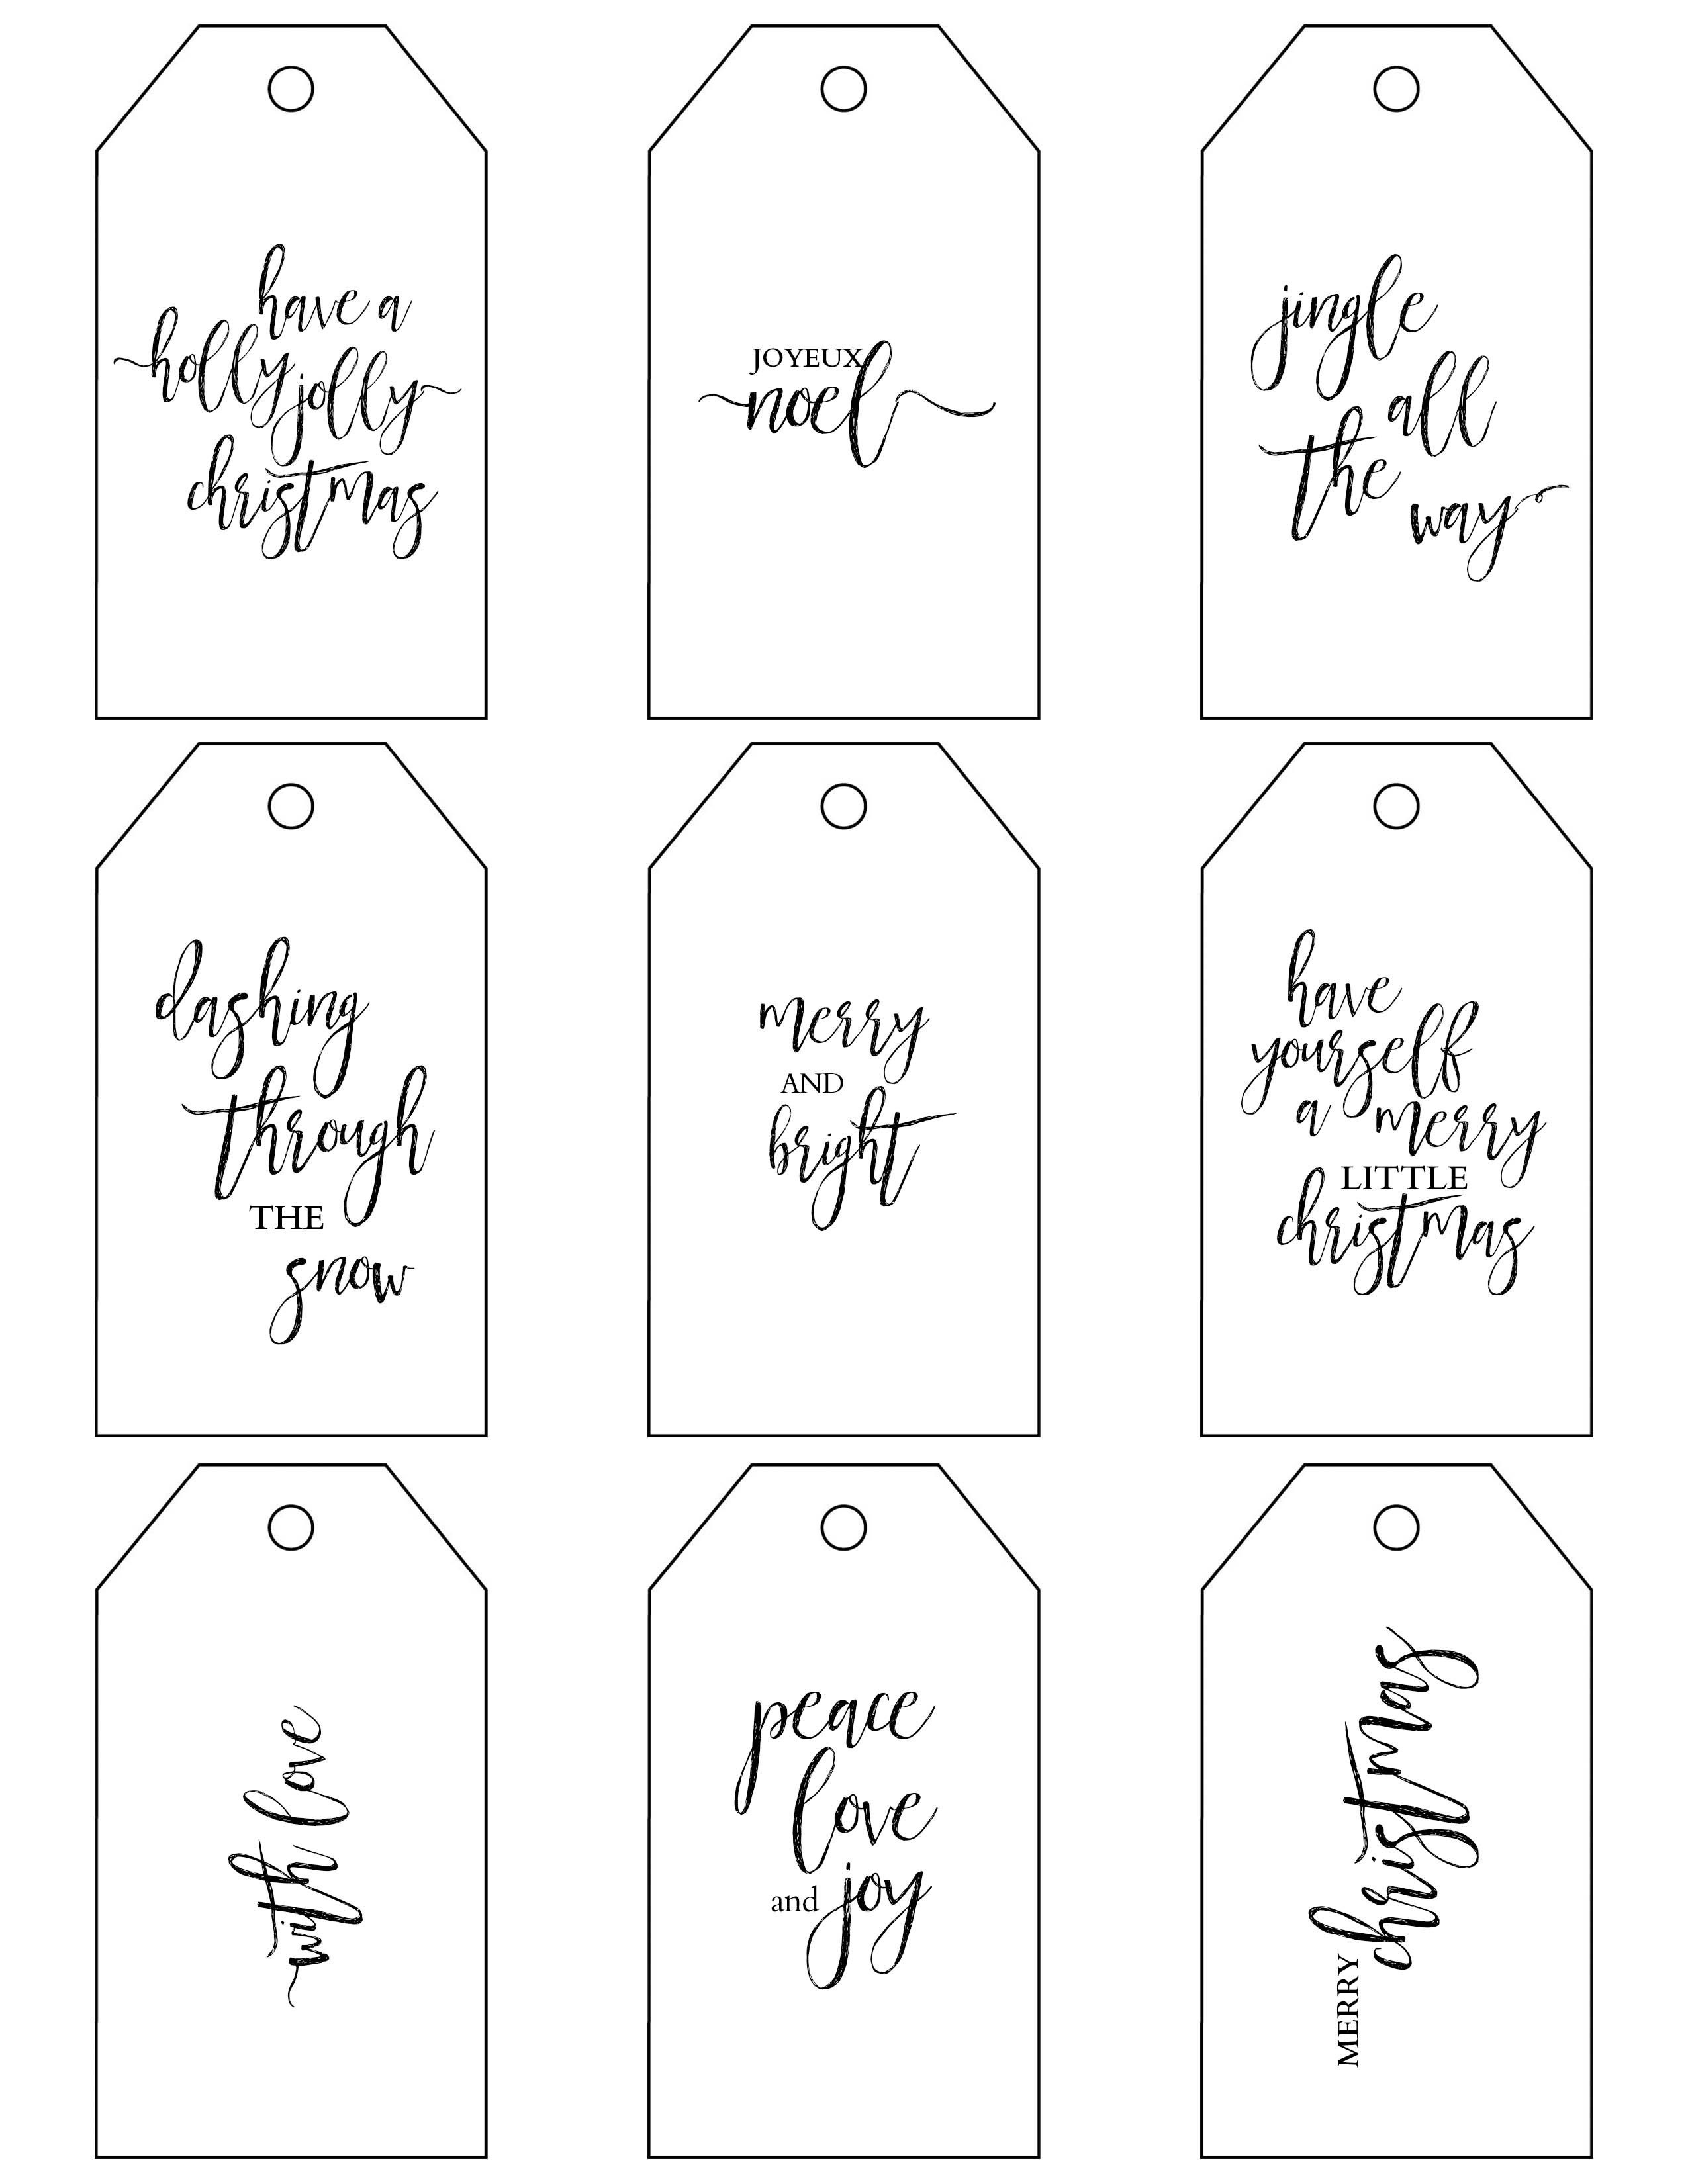 Printable Christmas Gift Tags Make Holiday Wrapping Simple - Diy Gift Tags Free Printable